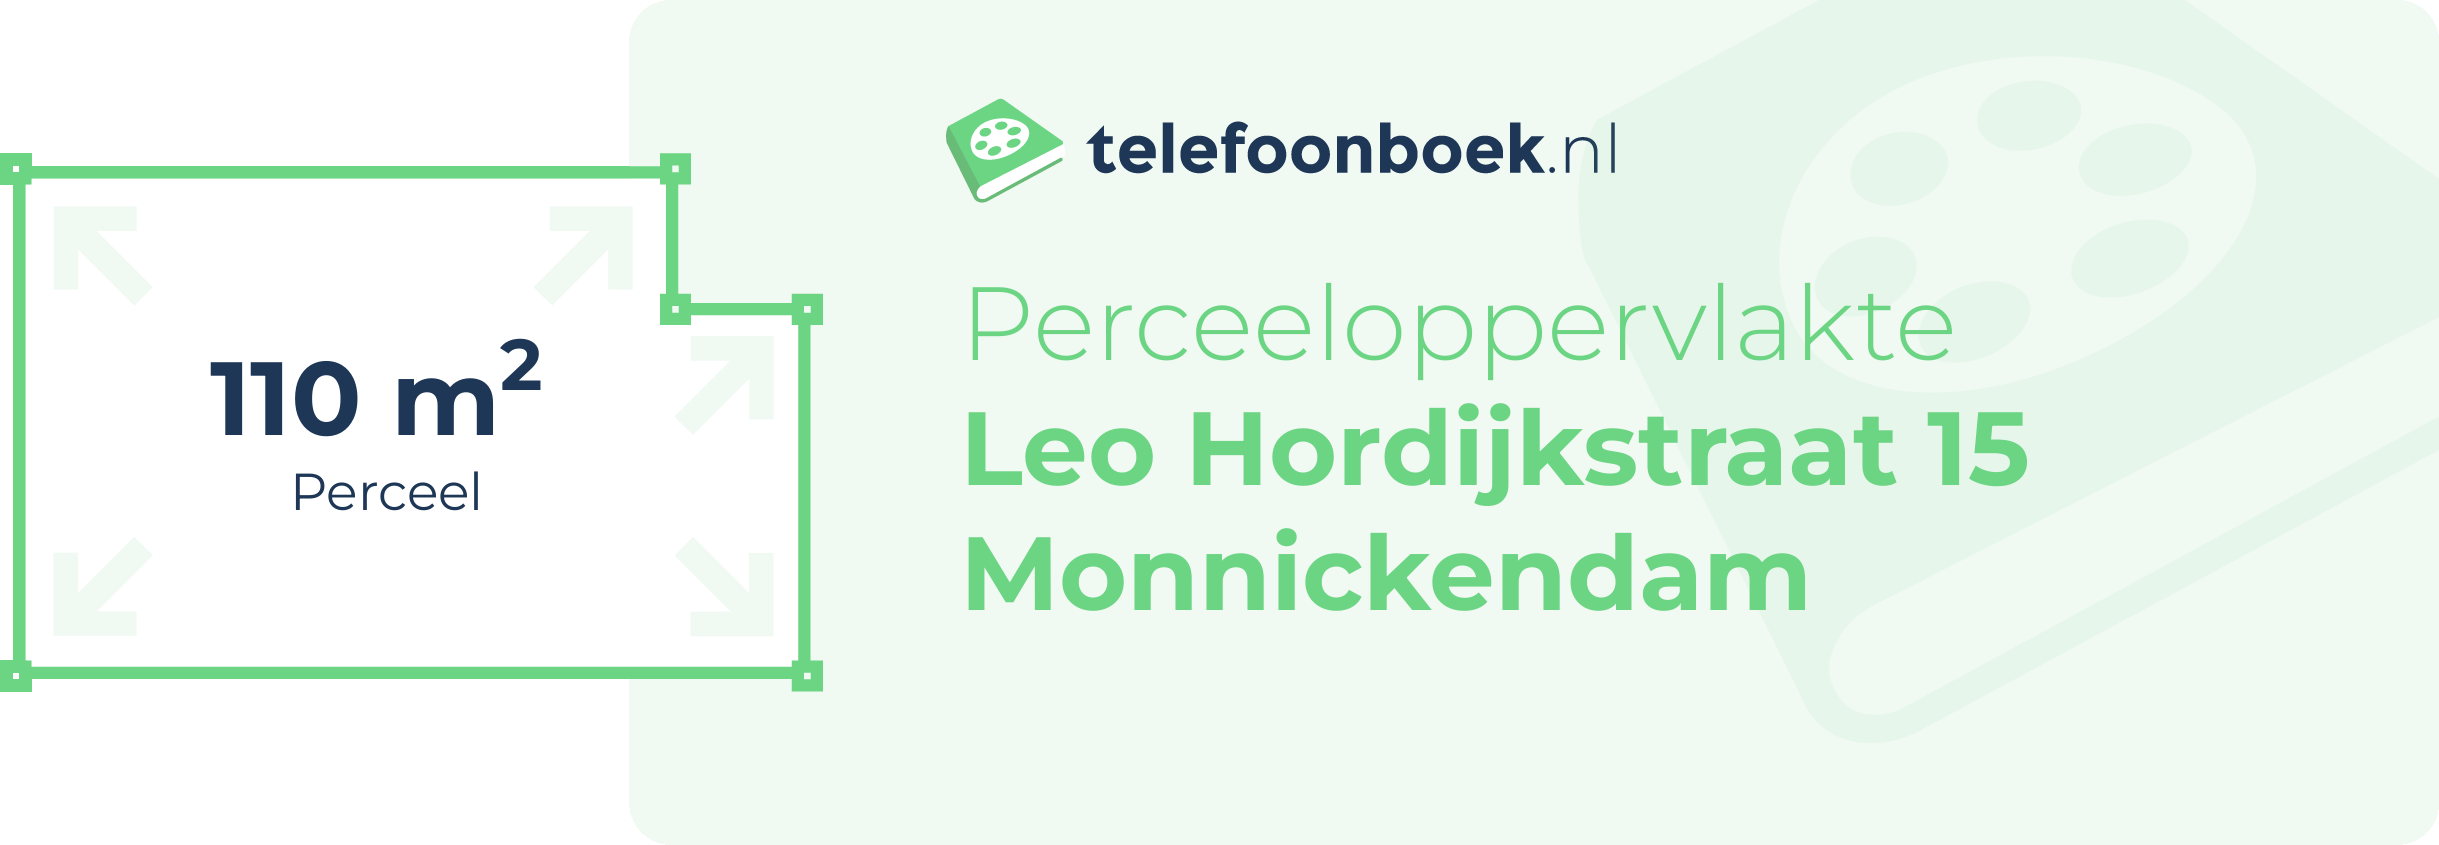 Perceeloppervlakte Leo Hordijkstraat 15 Monnickendam